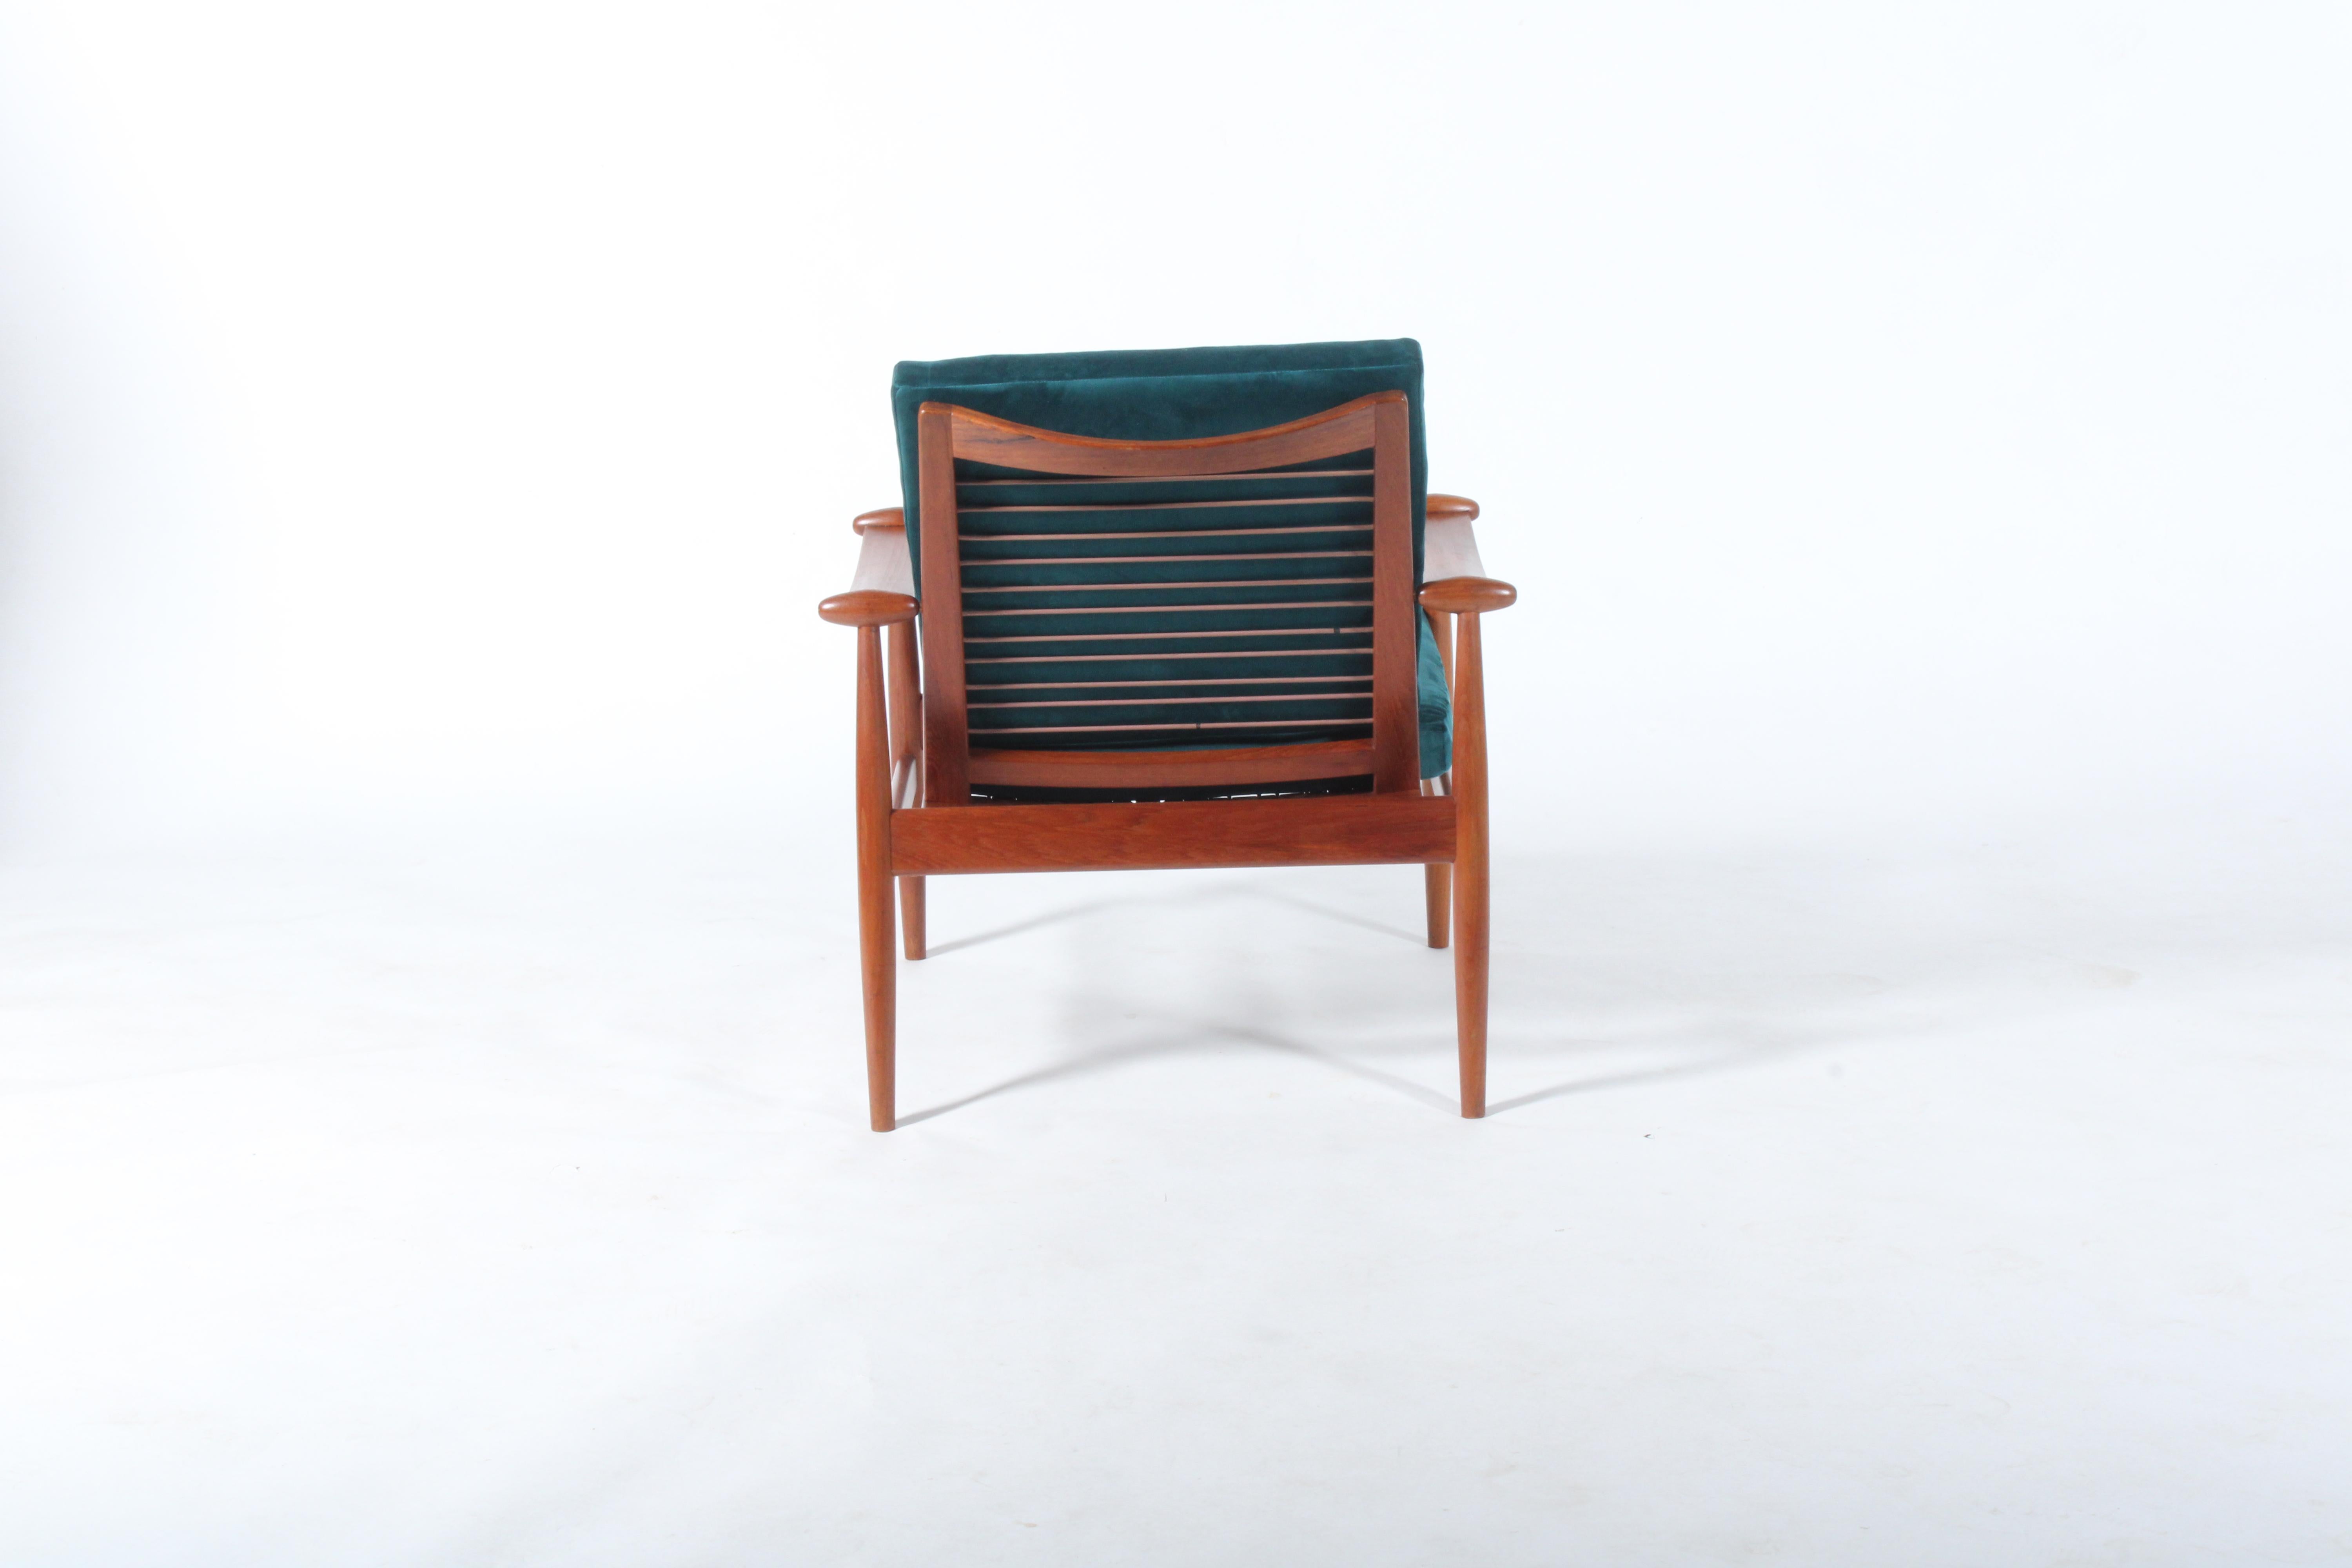 Velvet Exquisite Mid Century Danish Spade Chair By Finn Juhl For France & Son In Teak For Sale